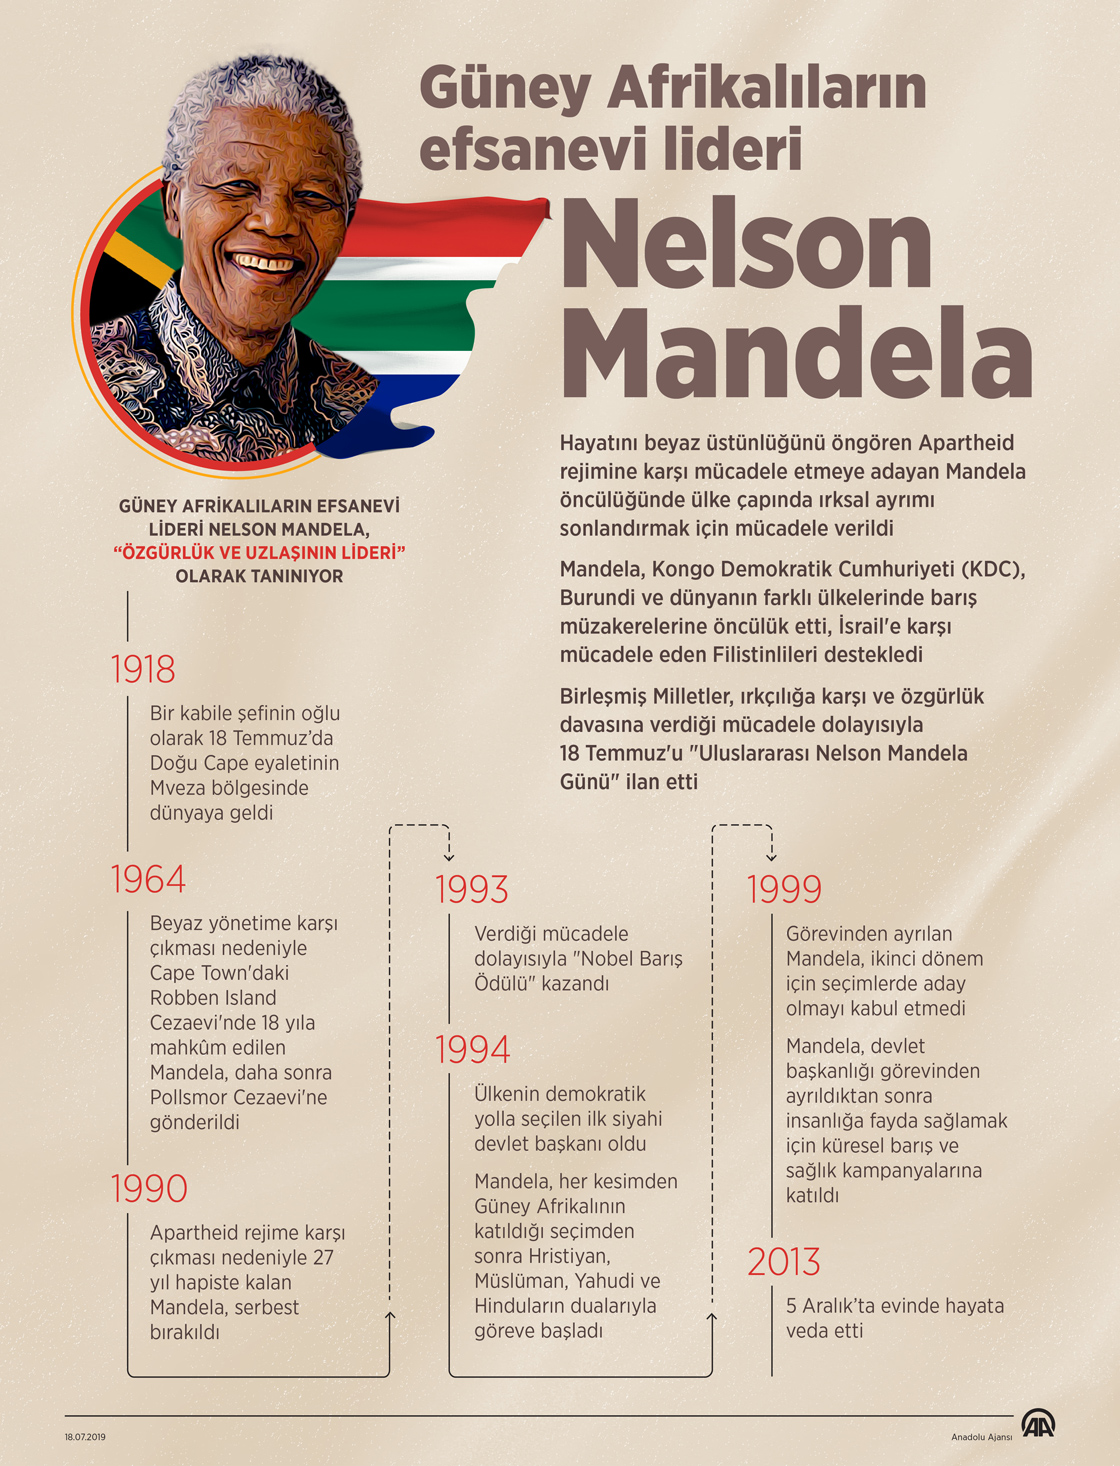 Mandela, doğumunun 101. yılında anılıyor